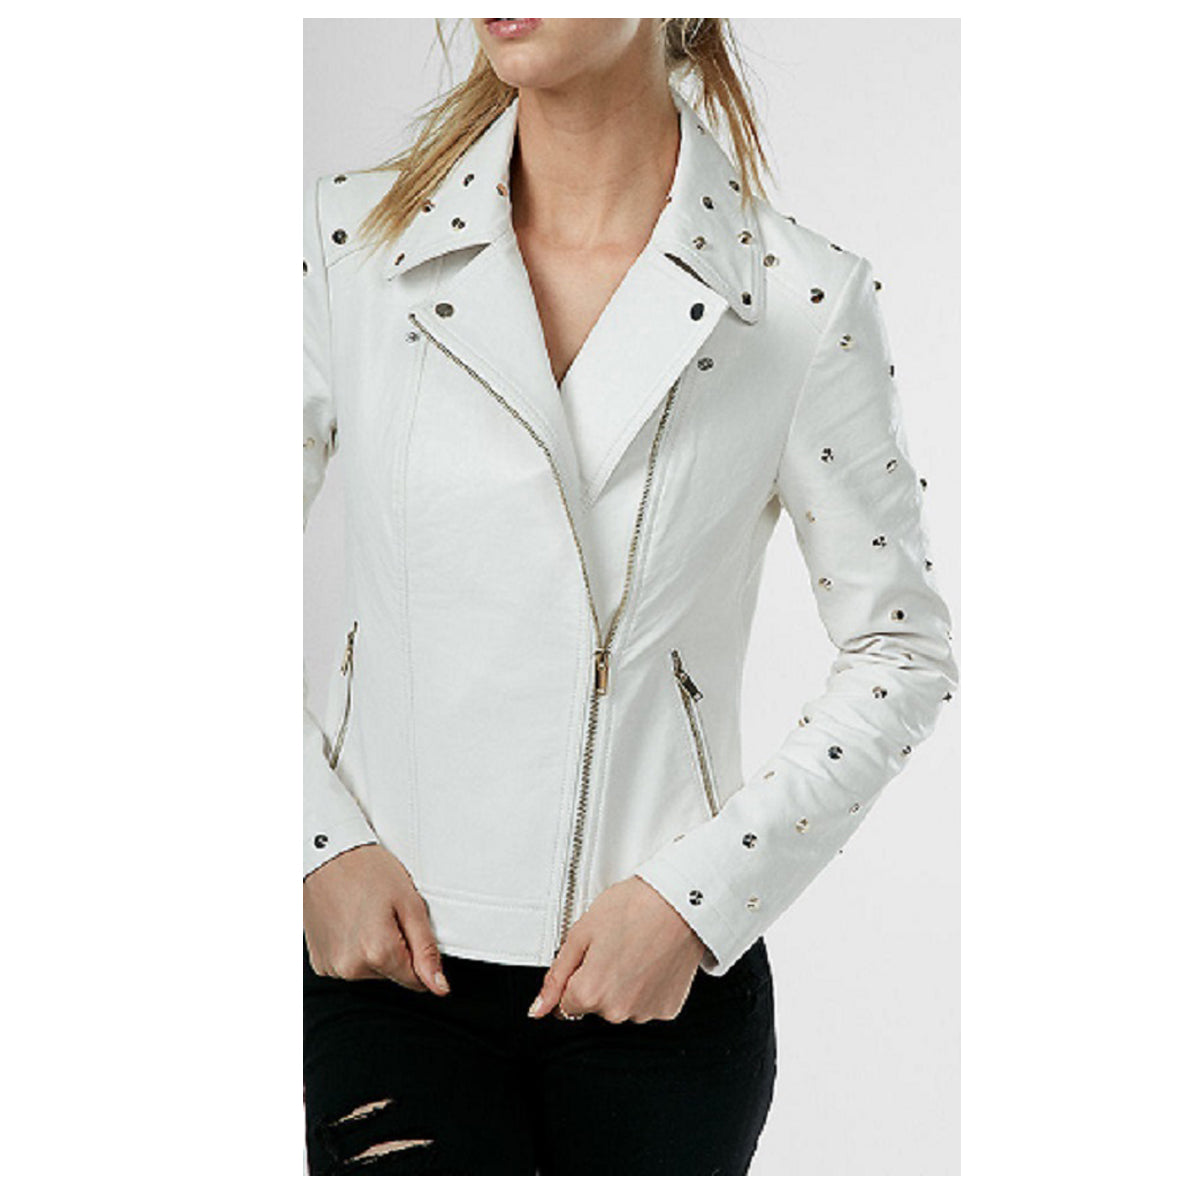 Women Fashion White Leather Gothic Studded Jacket